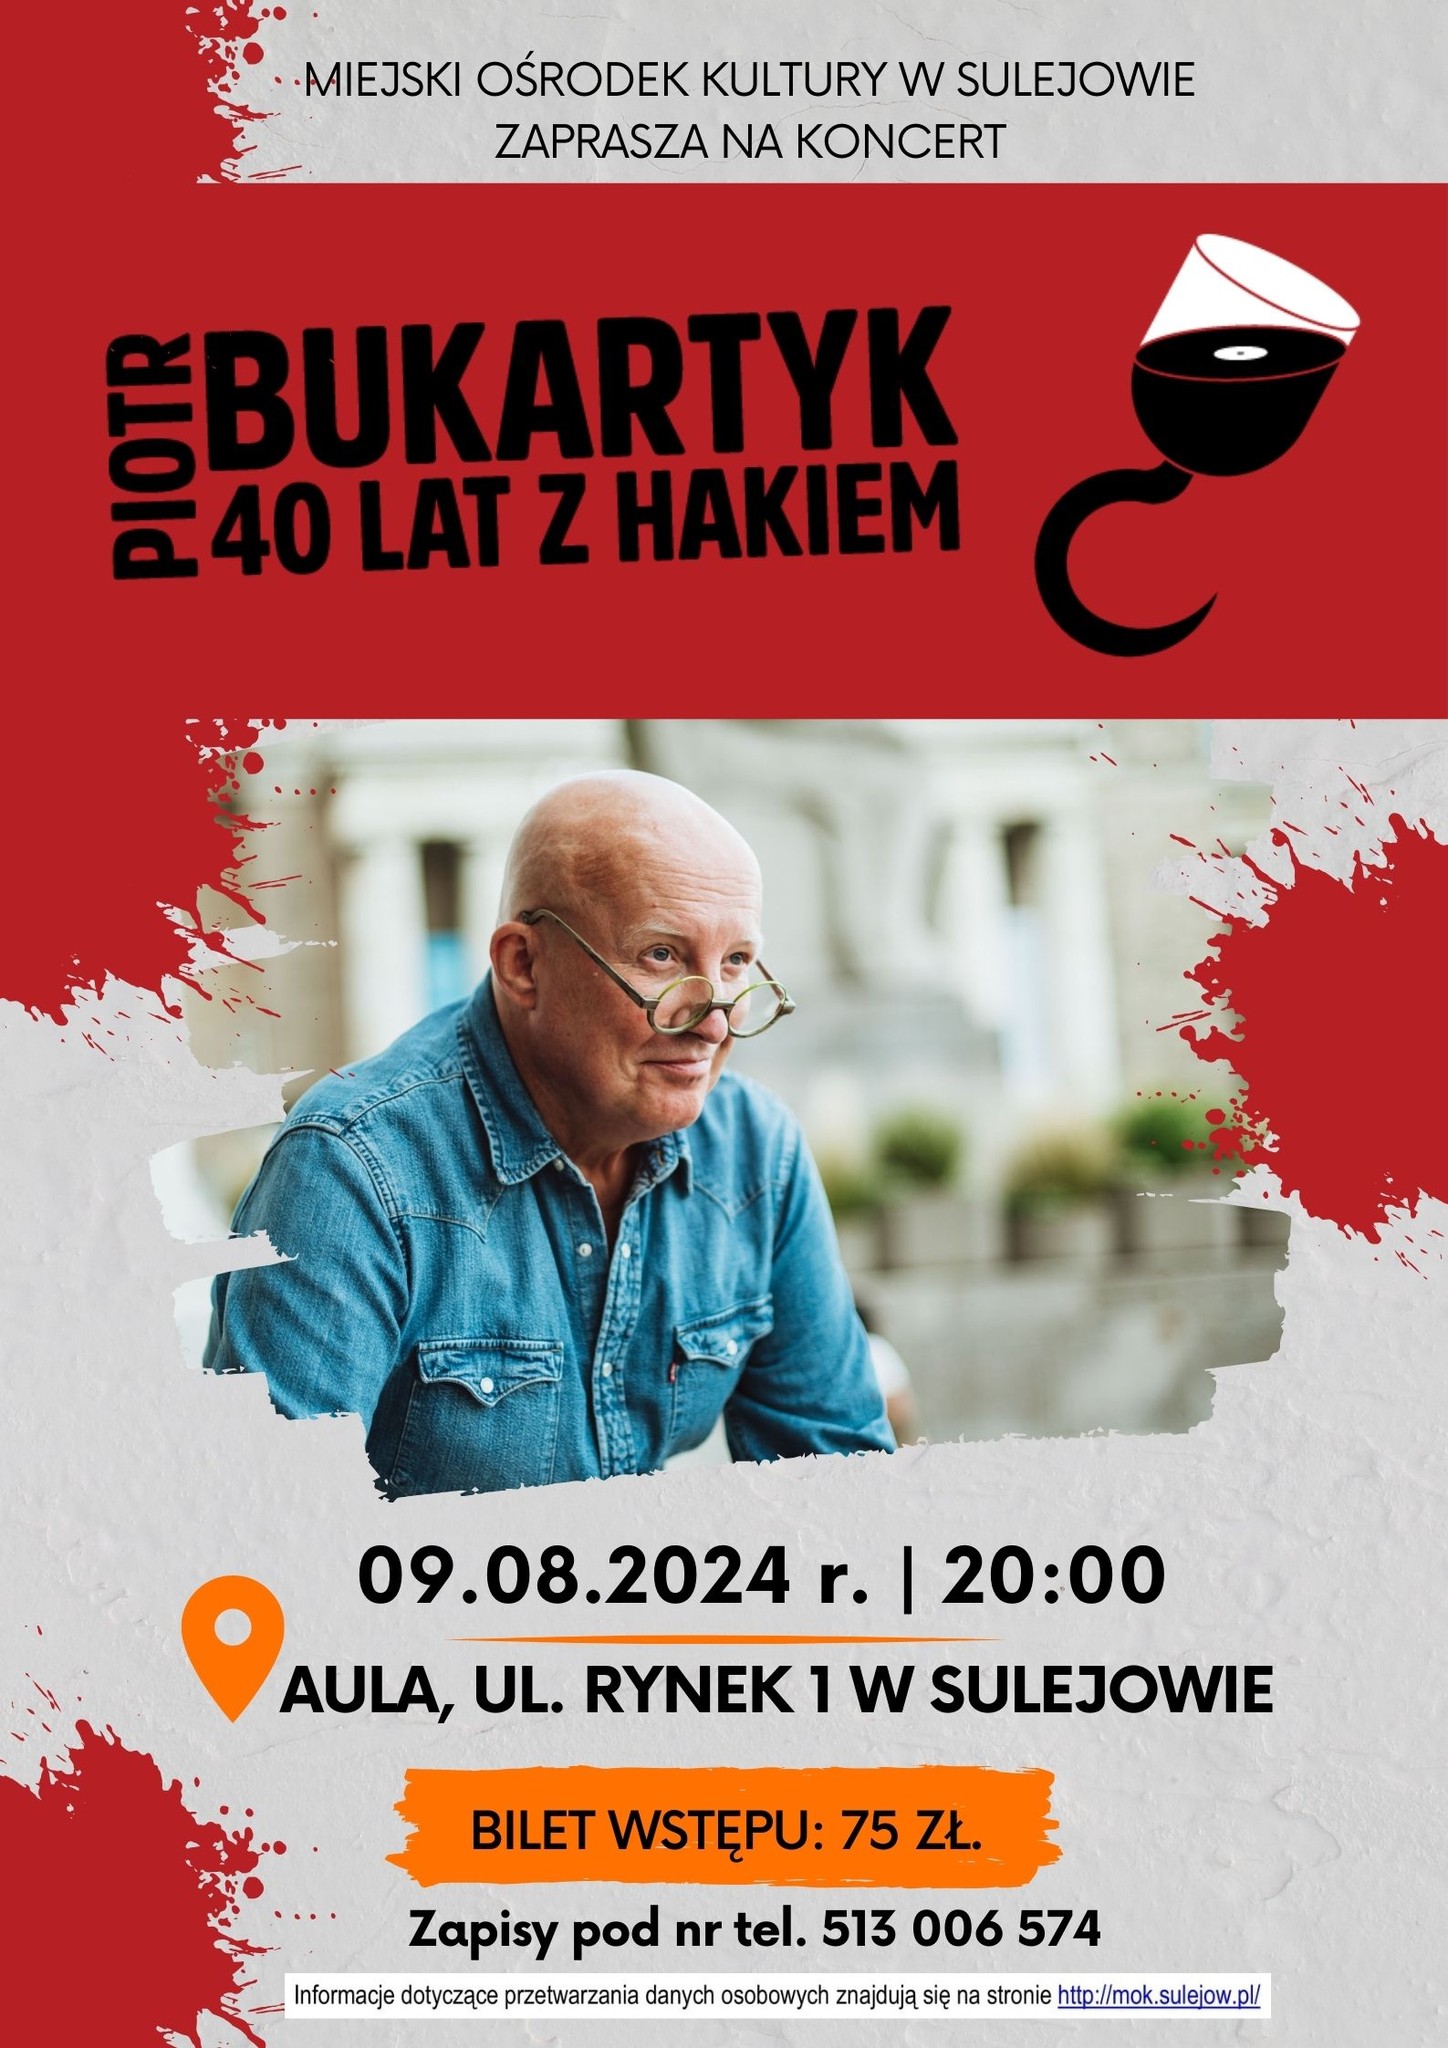 Piotr Bukartyk - koncert w Miejskim Orodku Kultury w Sulejowie